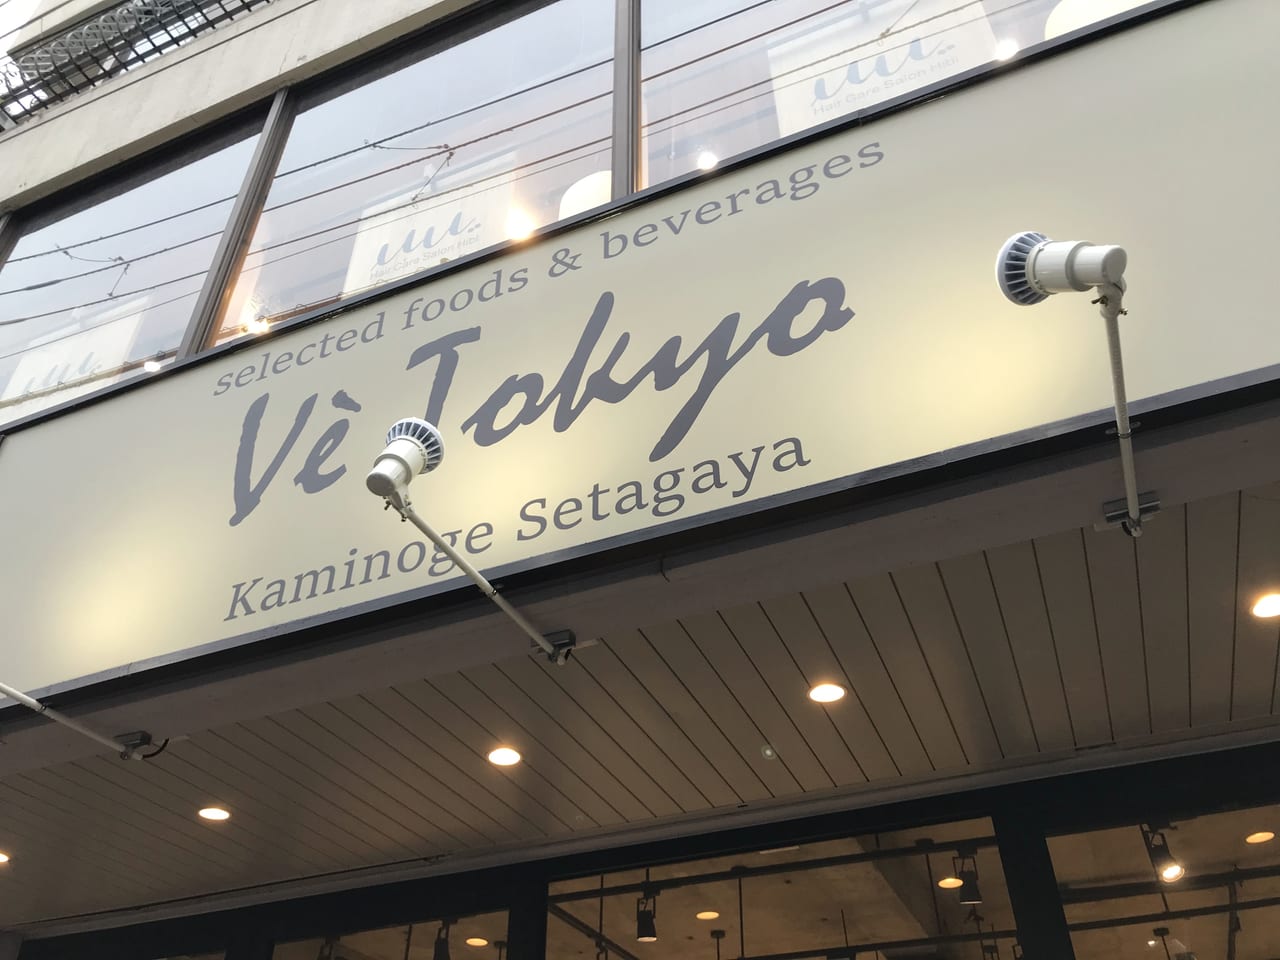 世田谷区上野毛にホルモンフリーのお肉があるファーマーズマーケット「Vè Tokyo（ヴィ・トーキョー）」が2021年6月19日にグランドオープンしました。